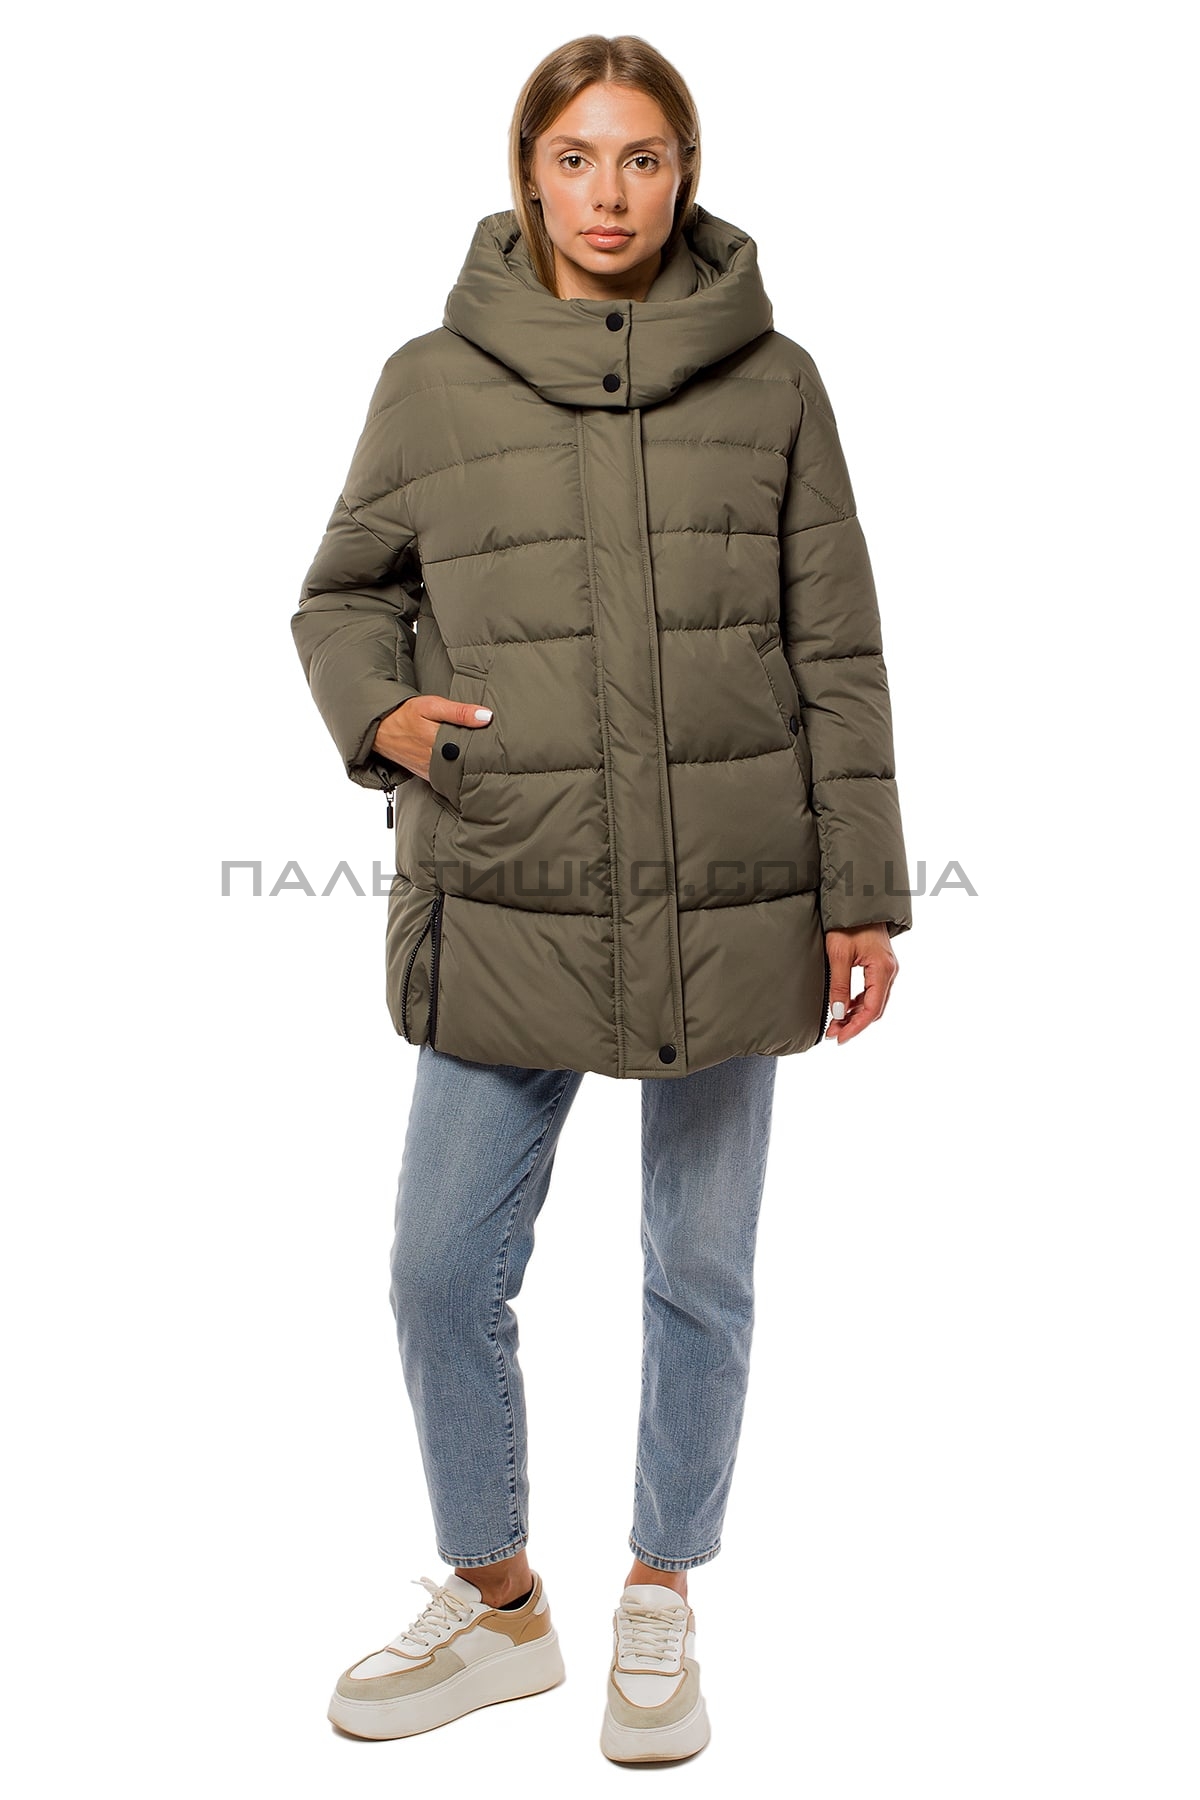  Женкская зимняя куртка хаки